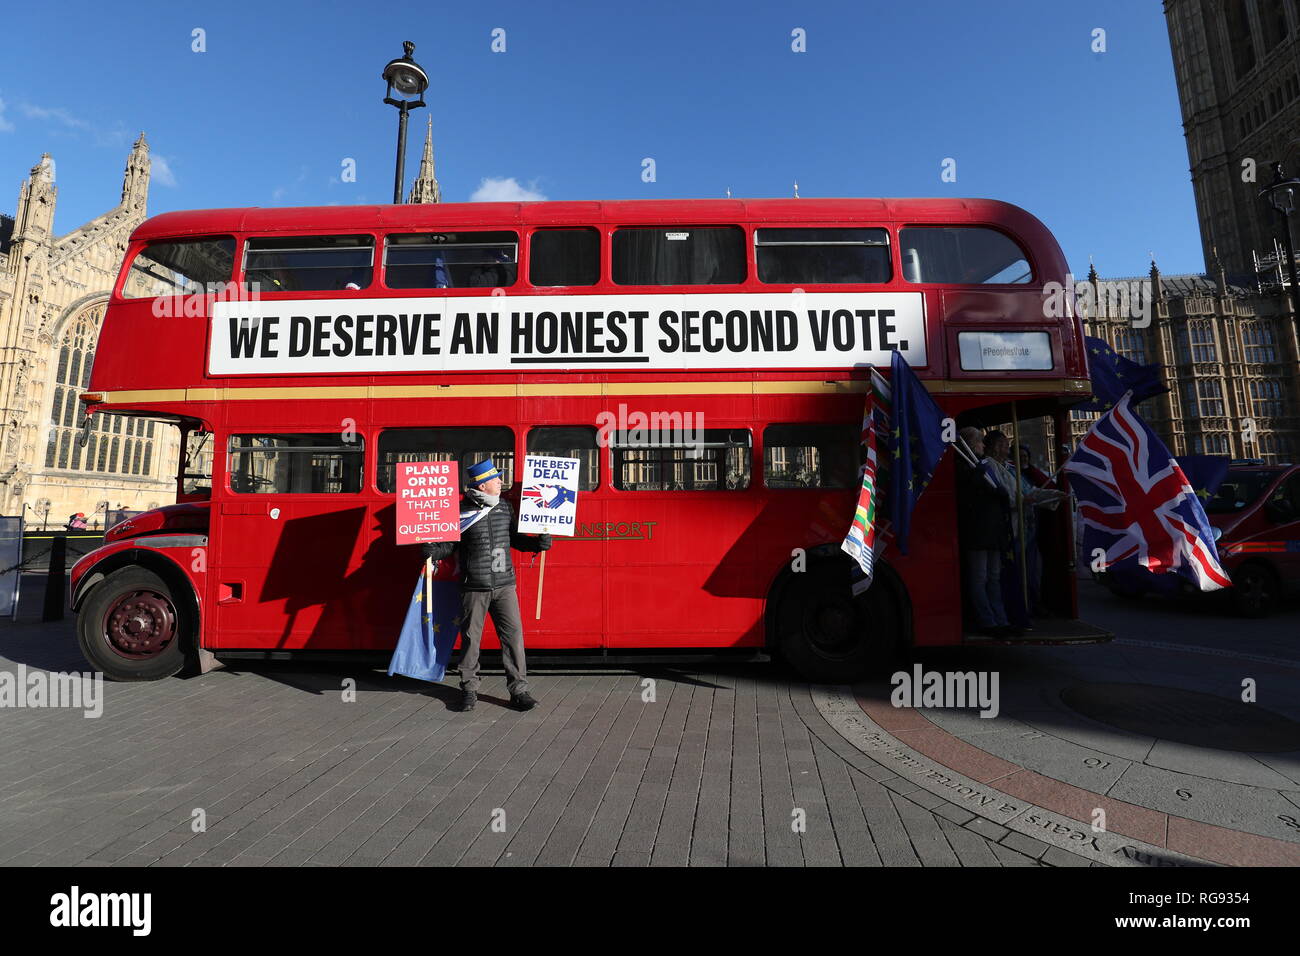 Militante Anti-Brexit Steve Bray se place en avant d'un bus avec un slogan appelant à un deuxième référendum, à l'extérieur de la Maison du Parlement à Londres. Banque D'Images